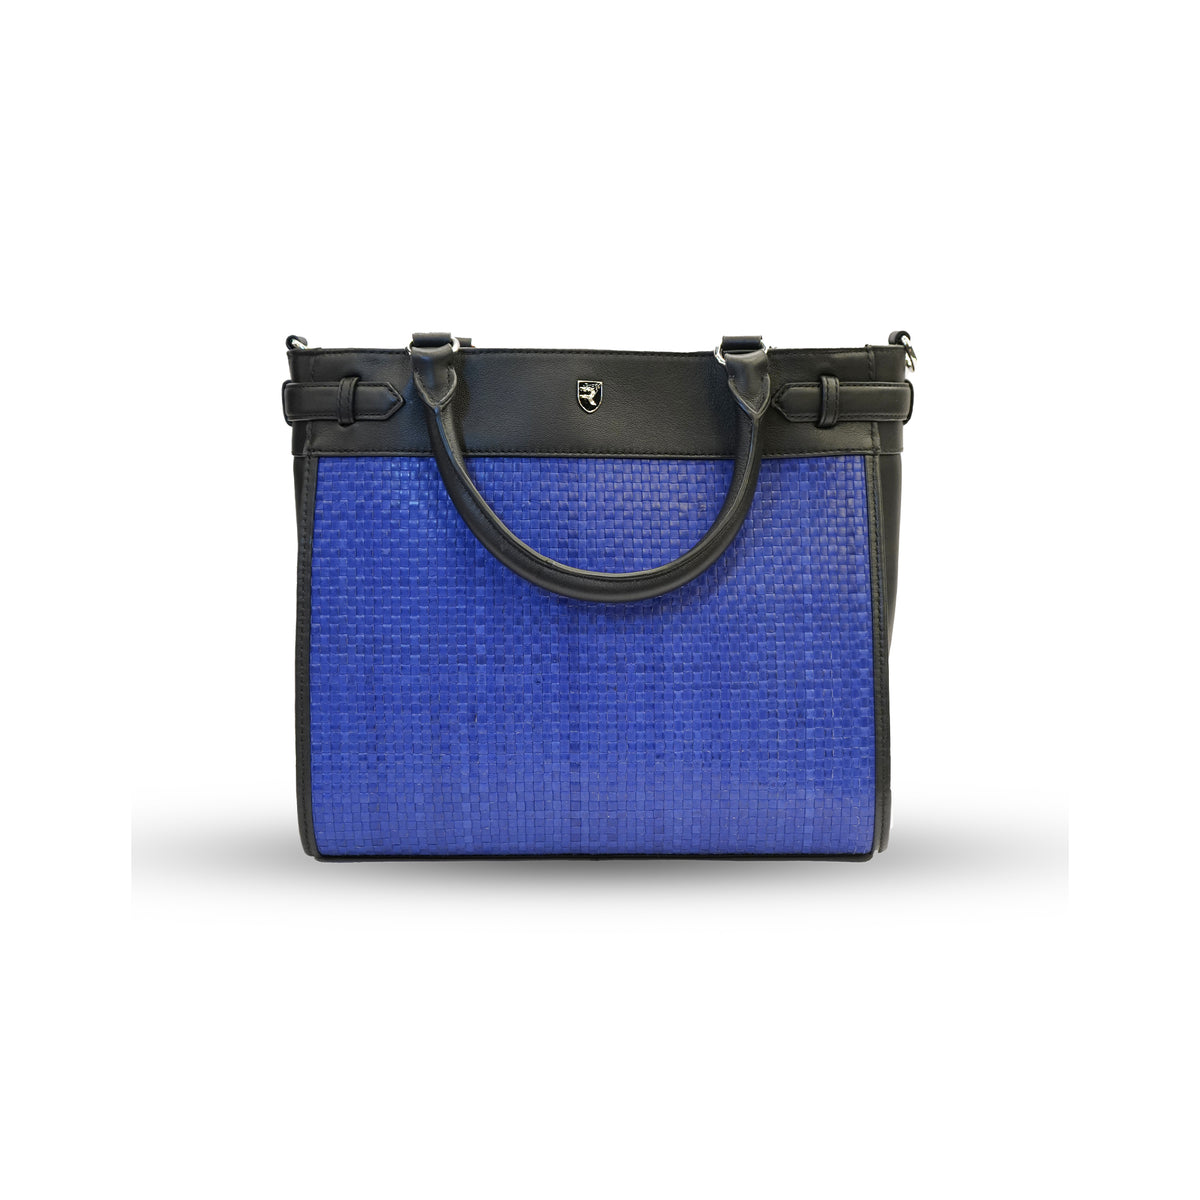 Blue and Black Satchel Bag